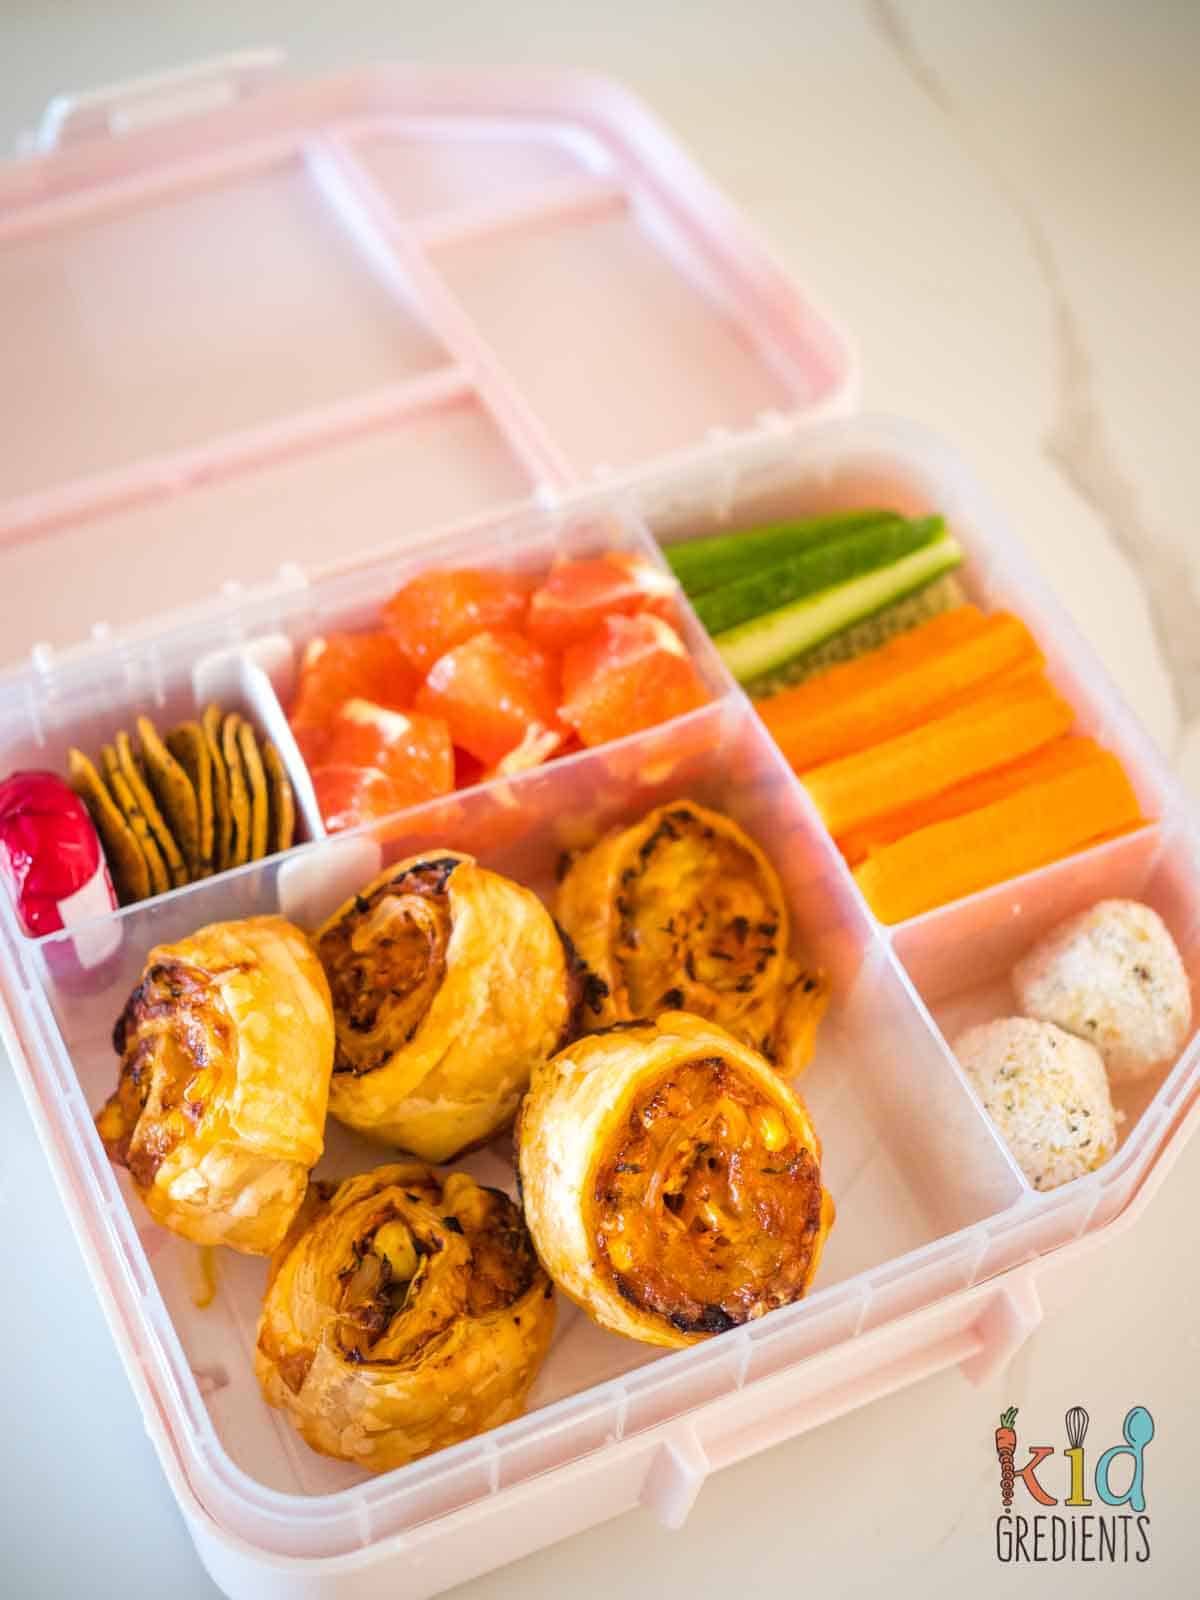 three veg lunchbox scrolls in a lunchbox